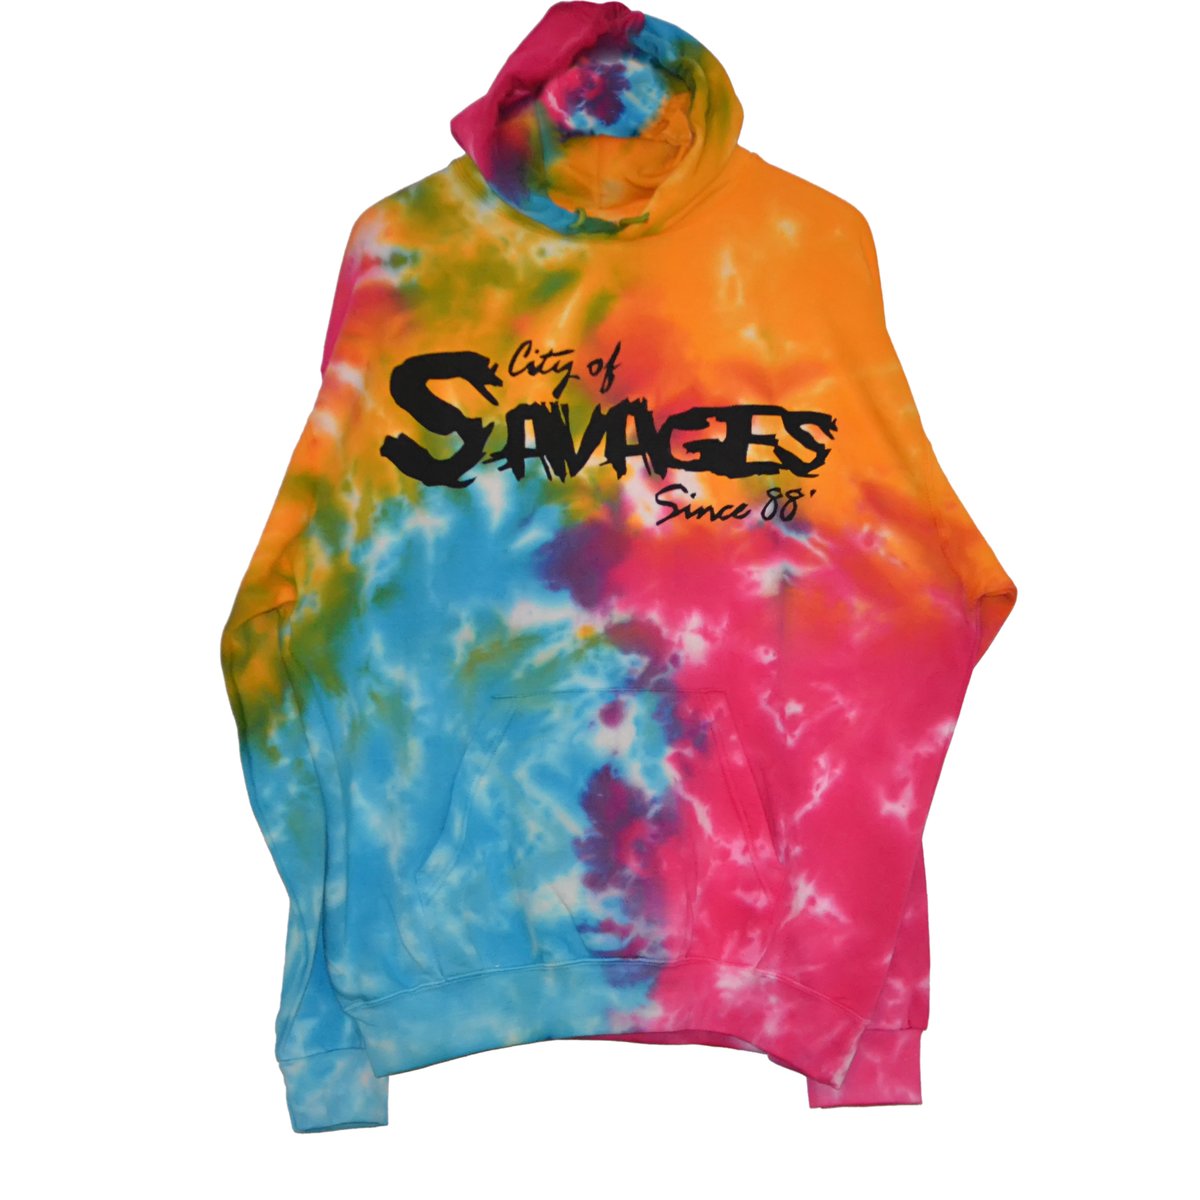 Image of "City of Savages" logo Tie-Dye hoodie